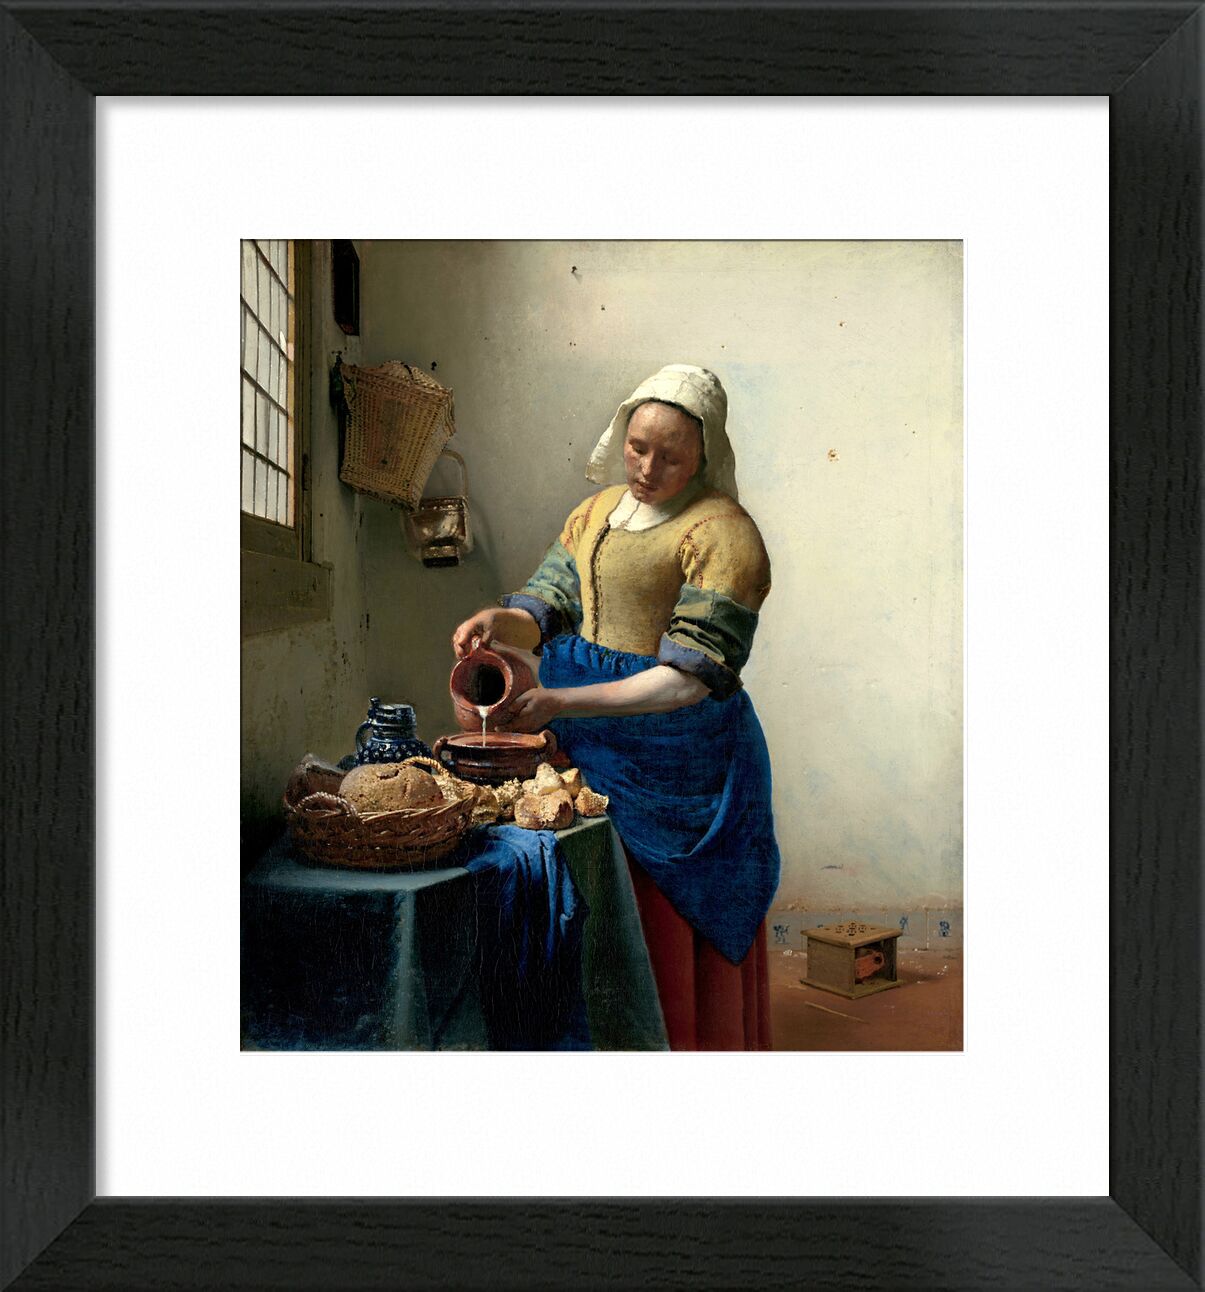 Das Milchmädchen - Johannes Vermeer von Bildende Kunst, Prodi Art, Johannes Vermeer, Kochen, Lebensmittel, Melkerin, Milch, Kochen, Schmerzen